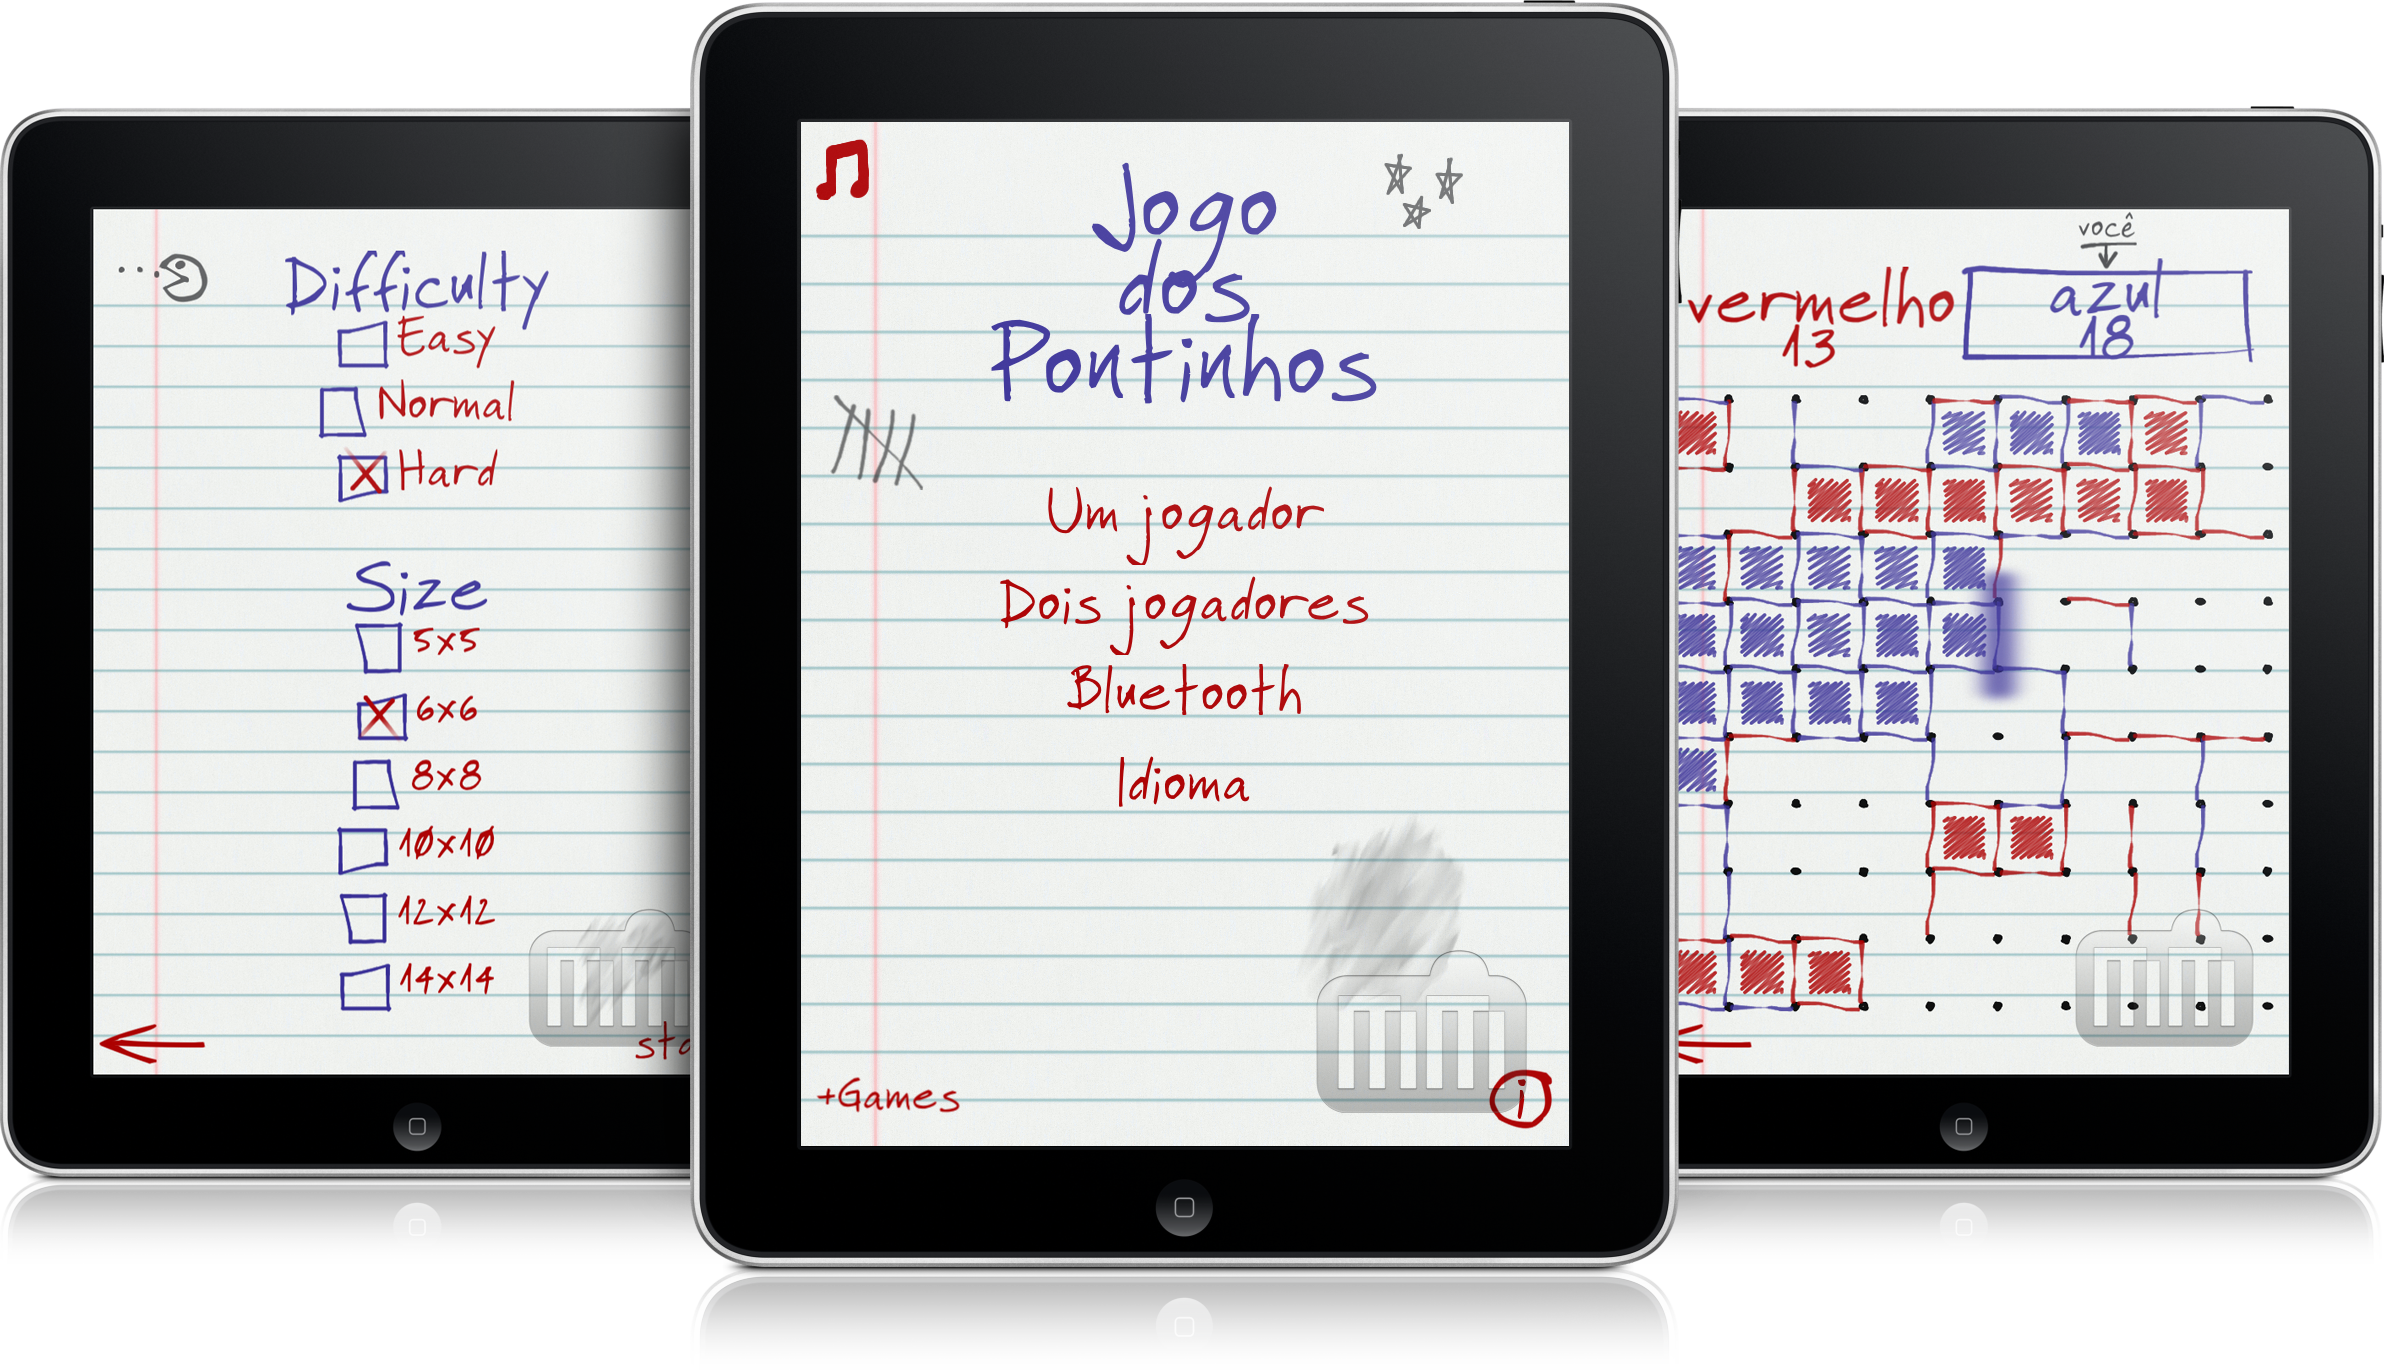 Desenvolvedor Saulo Souto lança Jogo dos Pontinhos HD para iPads